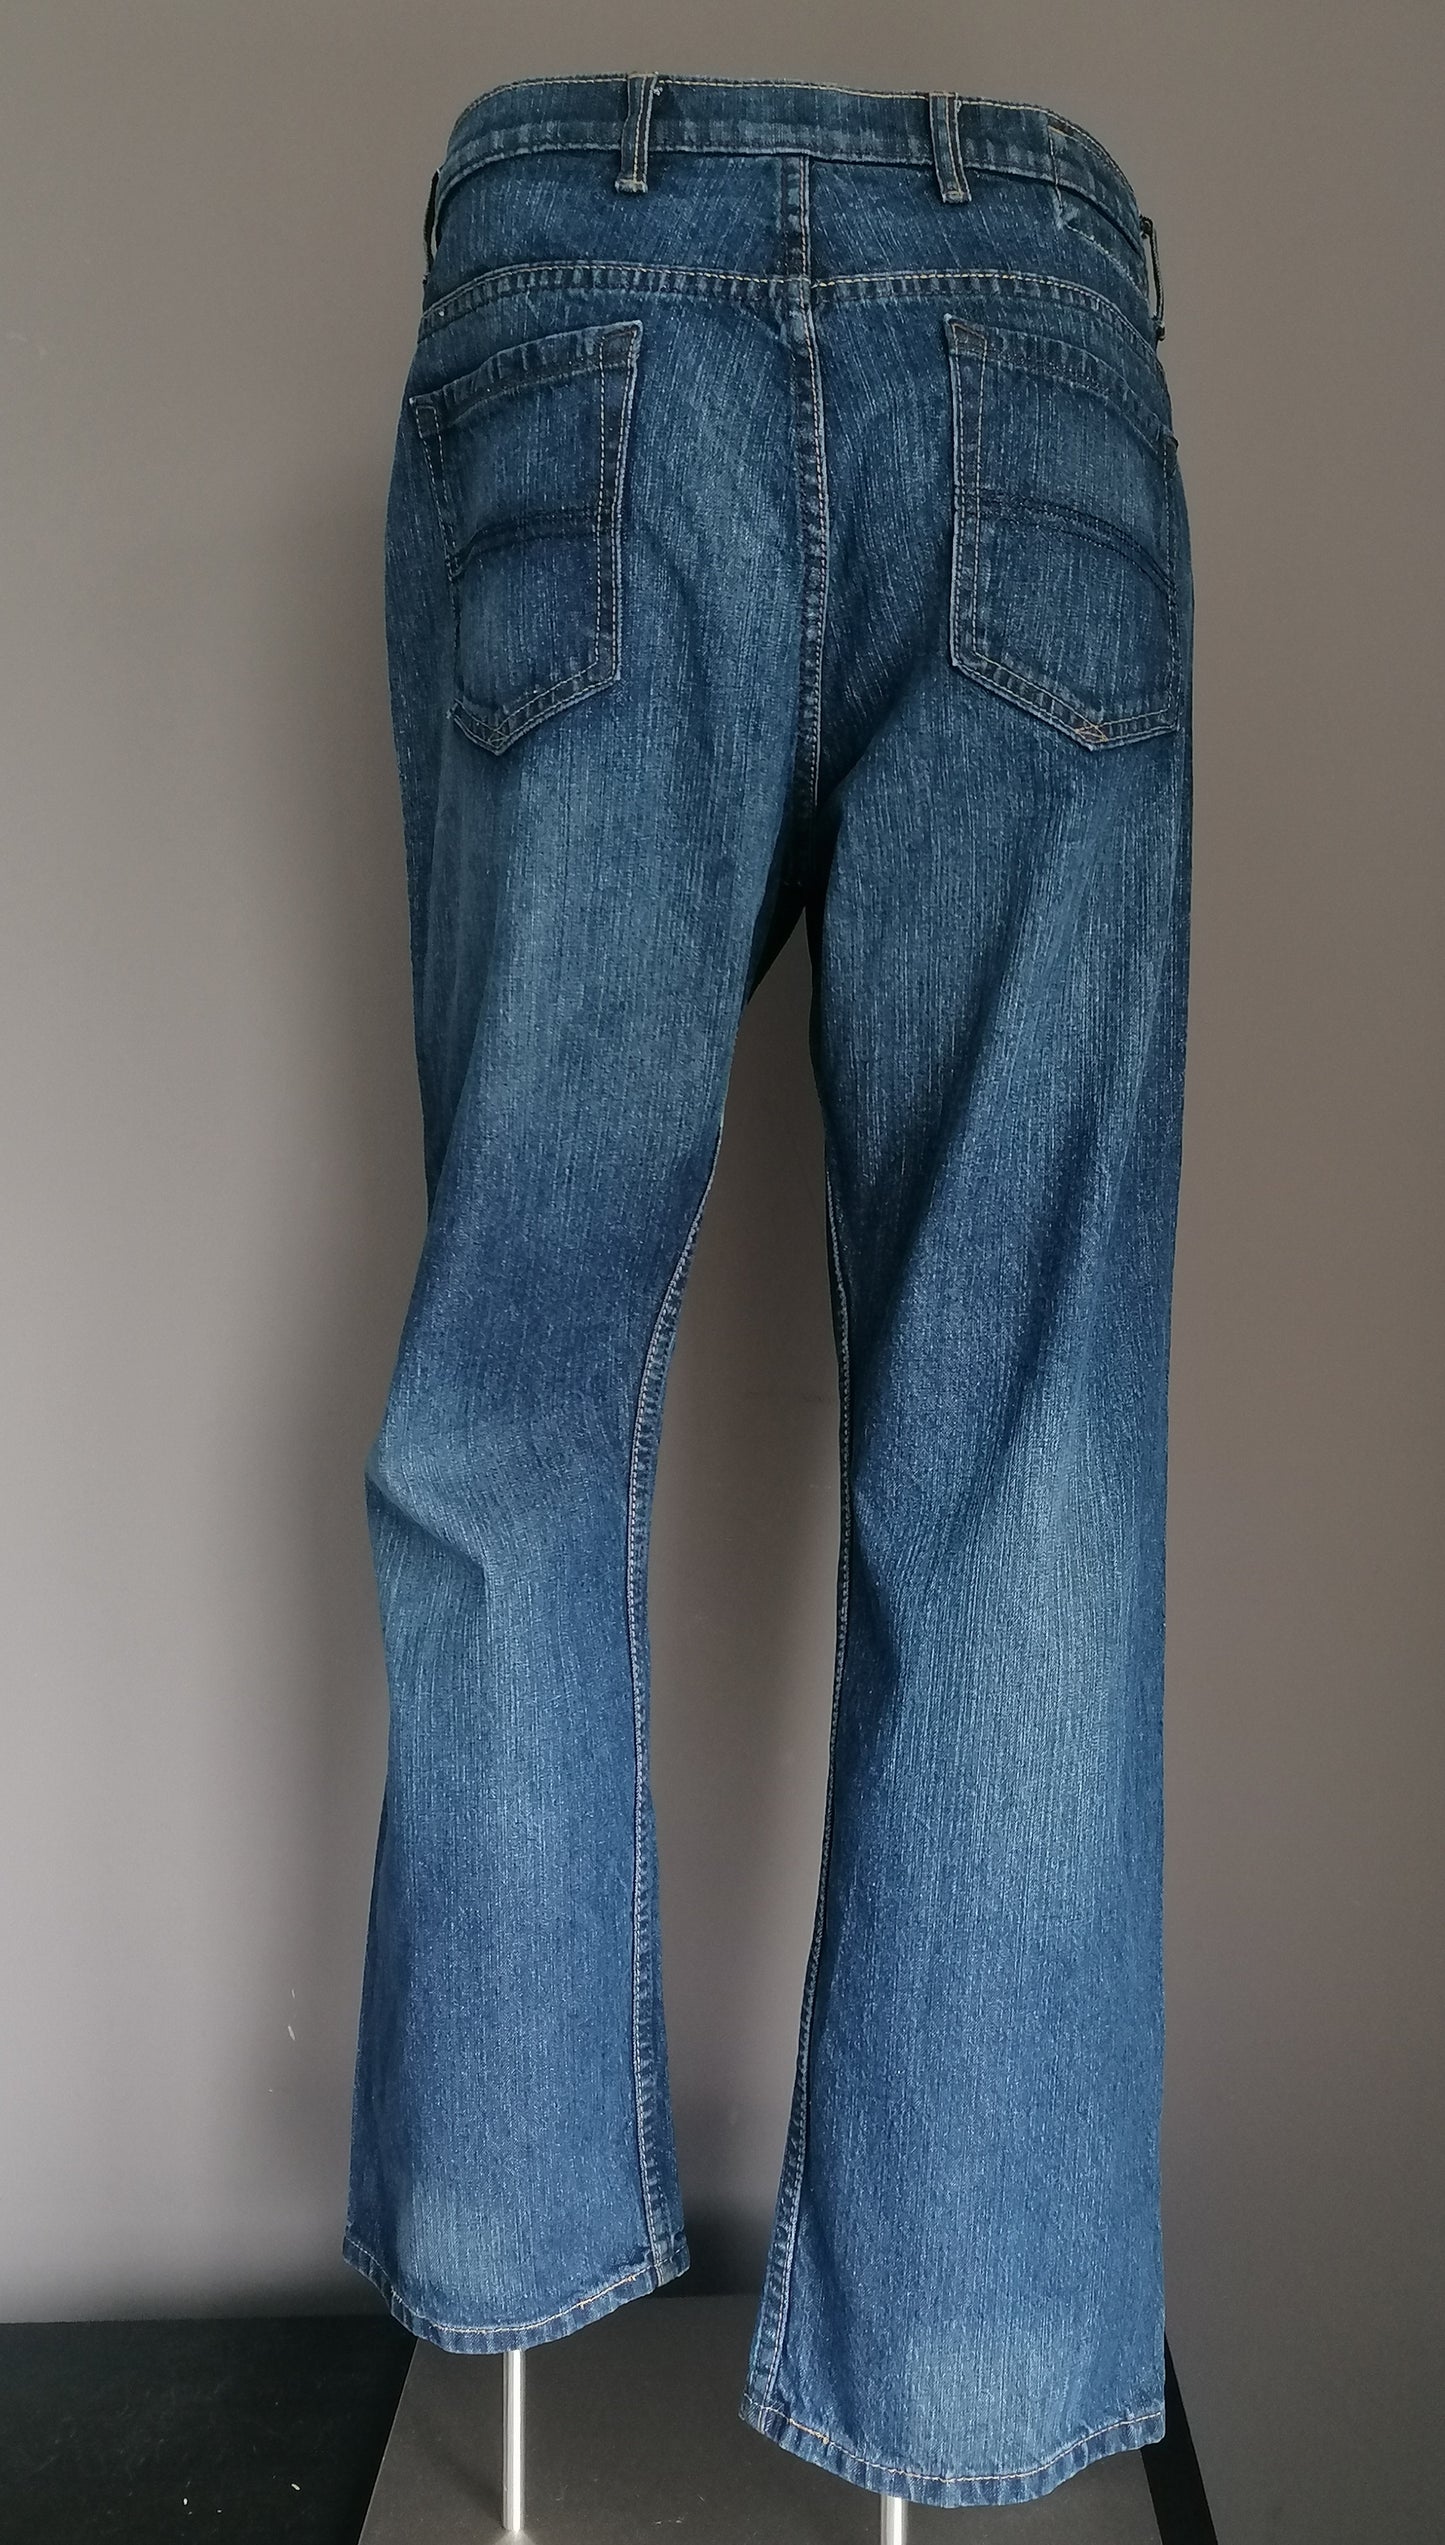 Jeans blu porti. Colorato blu scuro. Taglia W38 - L30.